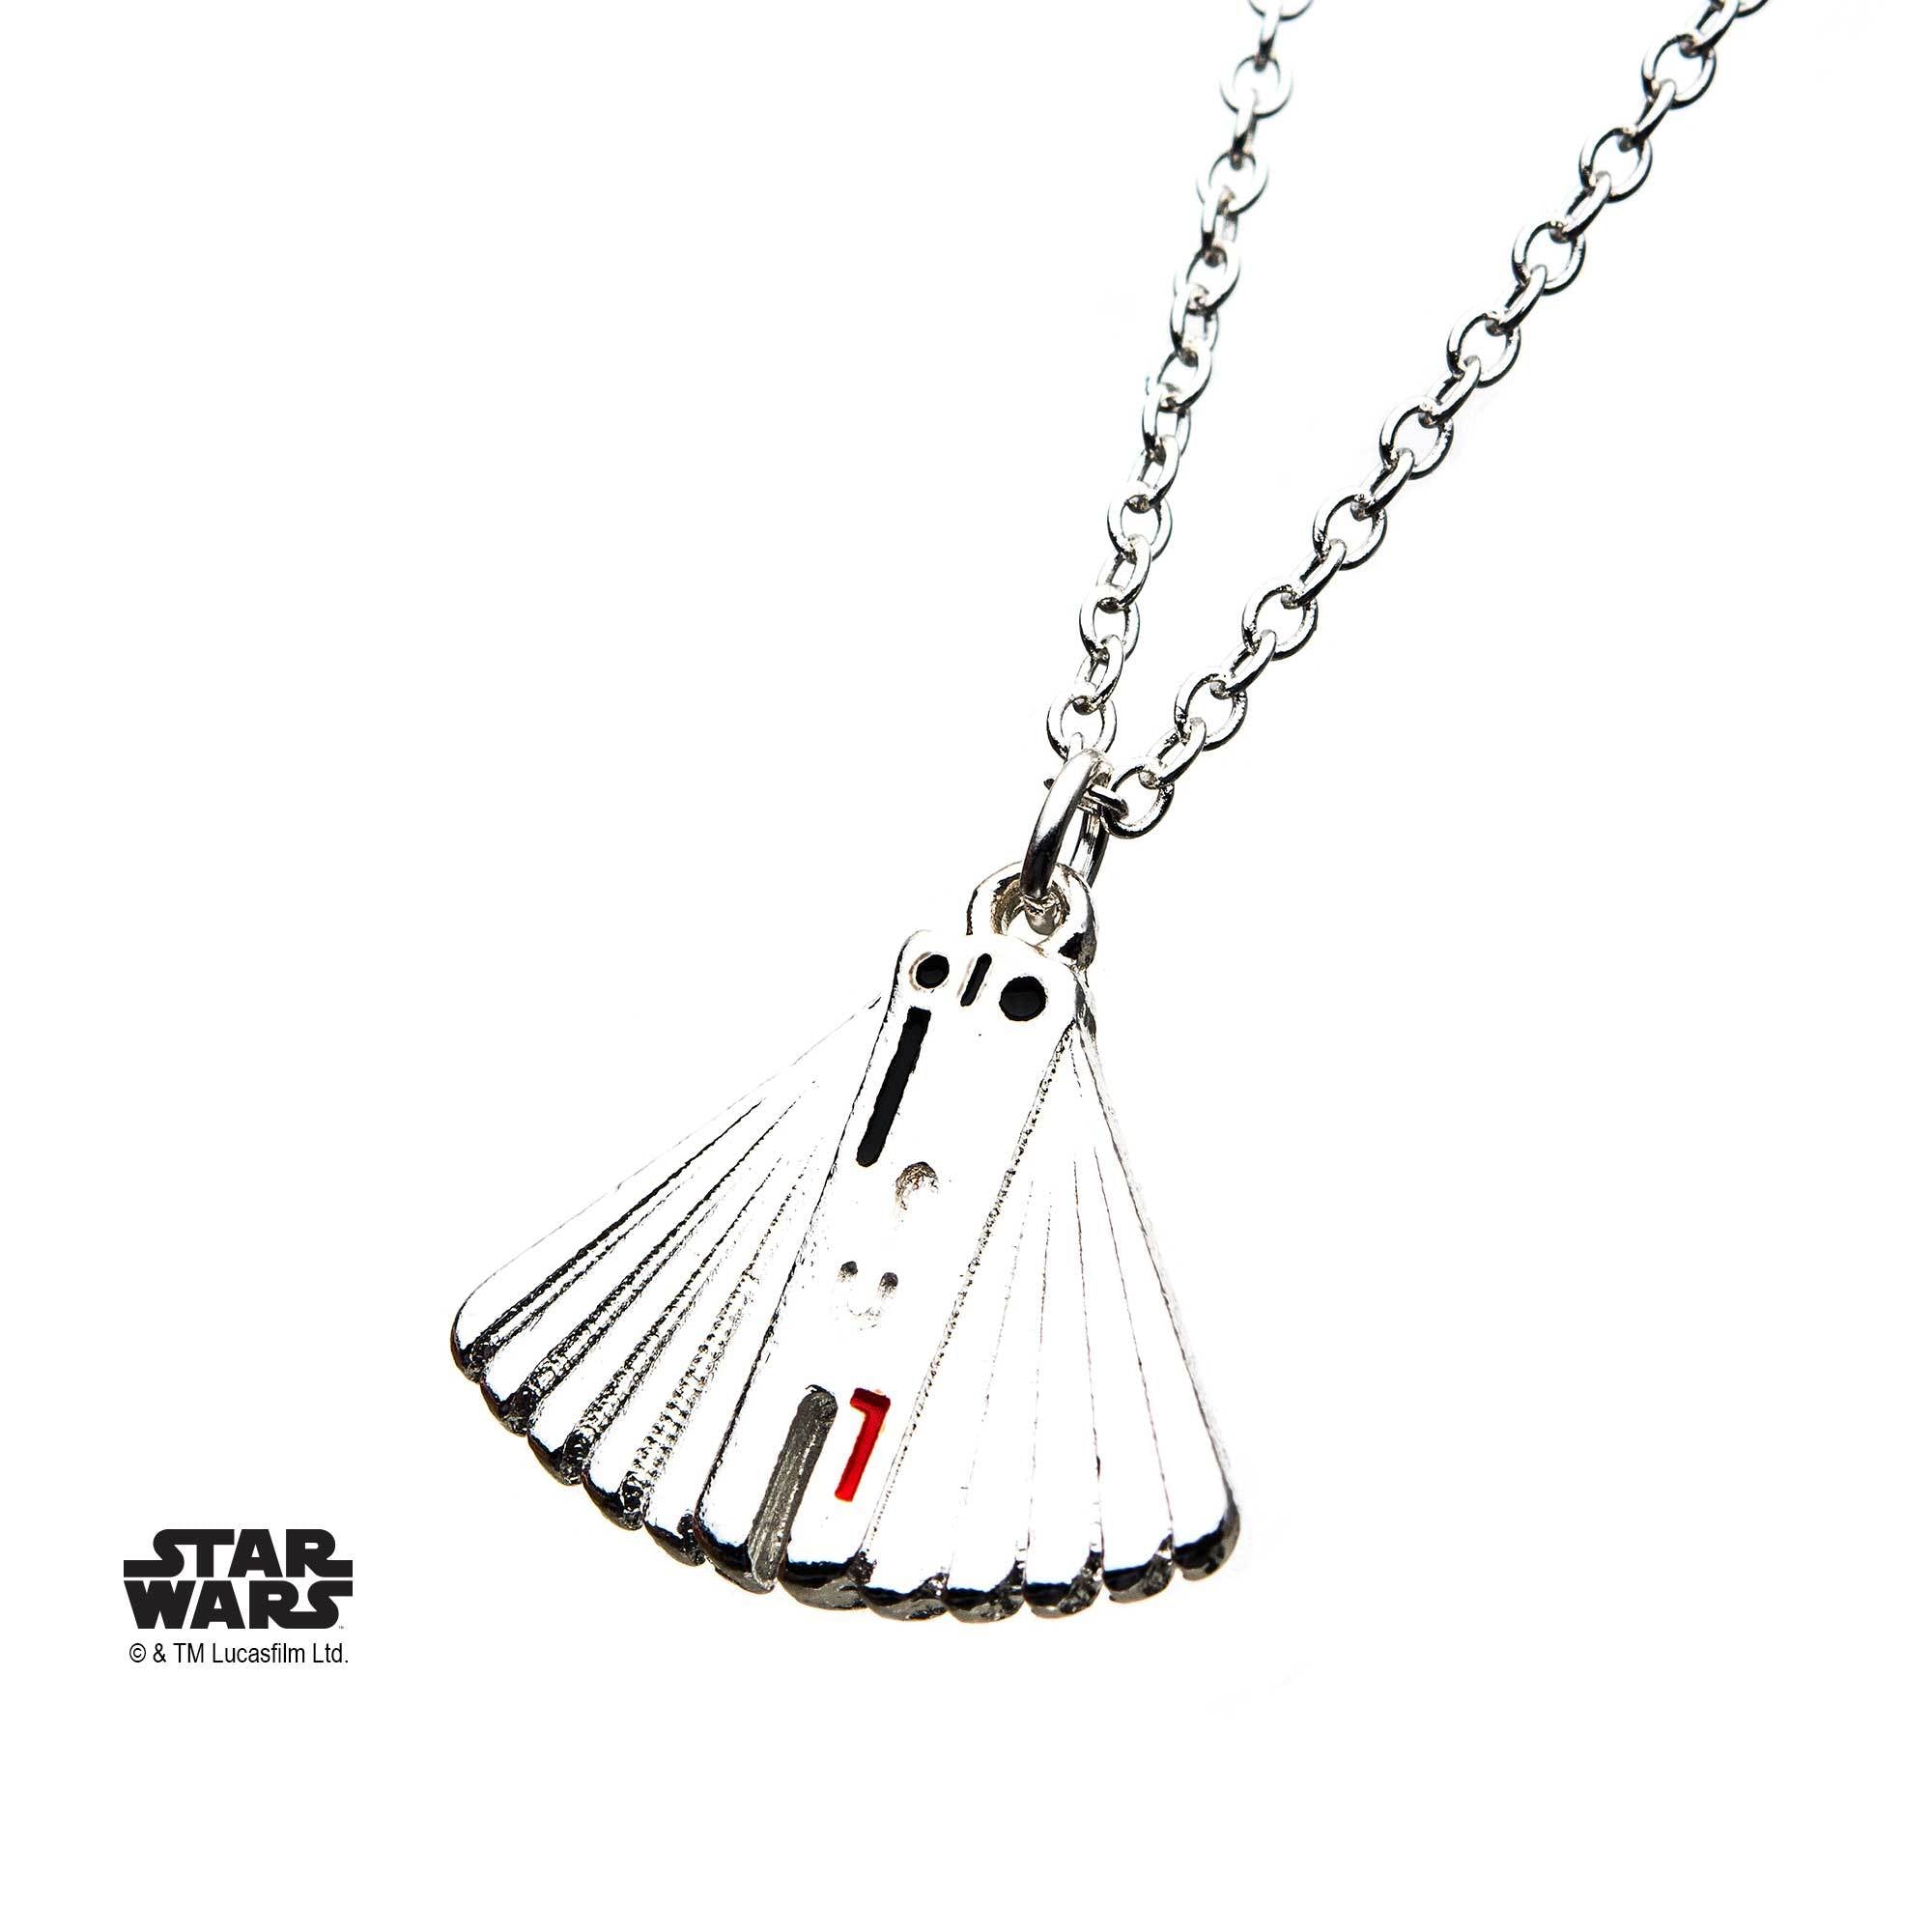 Star Wars Enfys Nest Fan Pendant Necklace